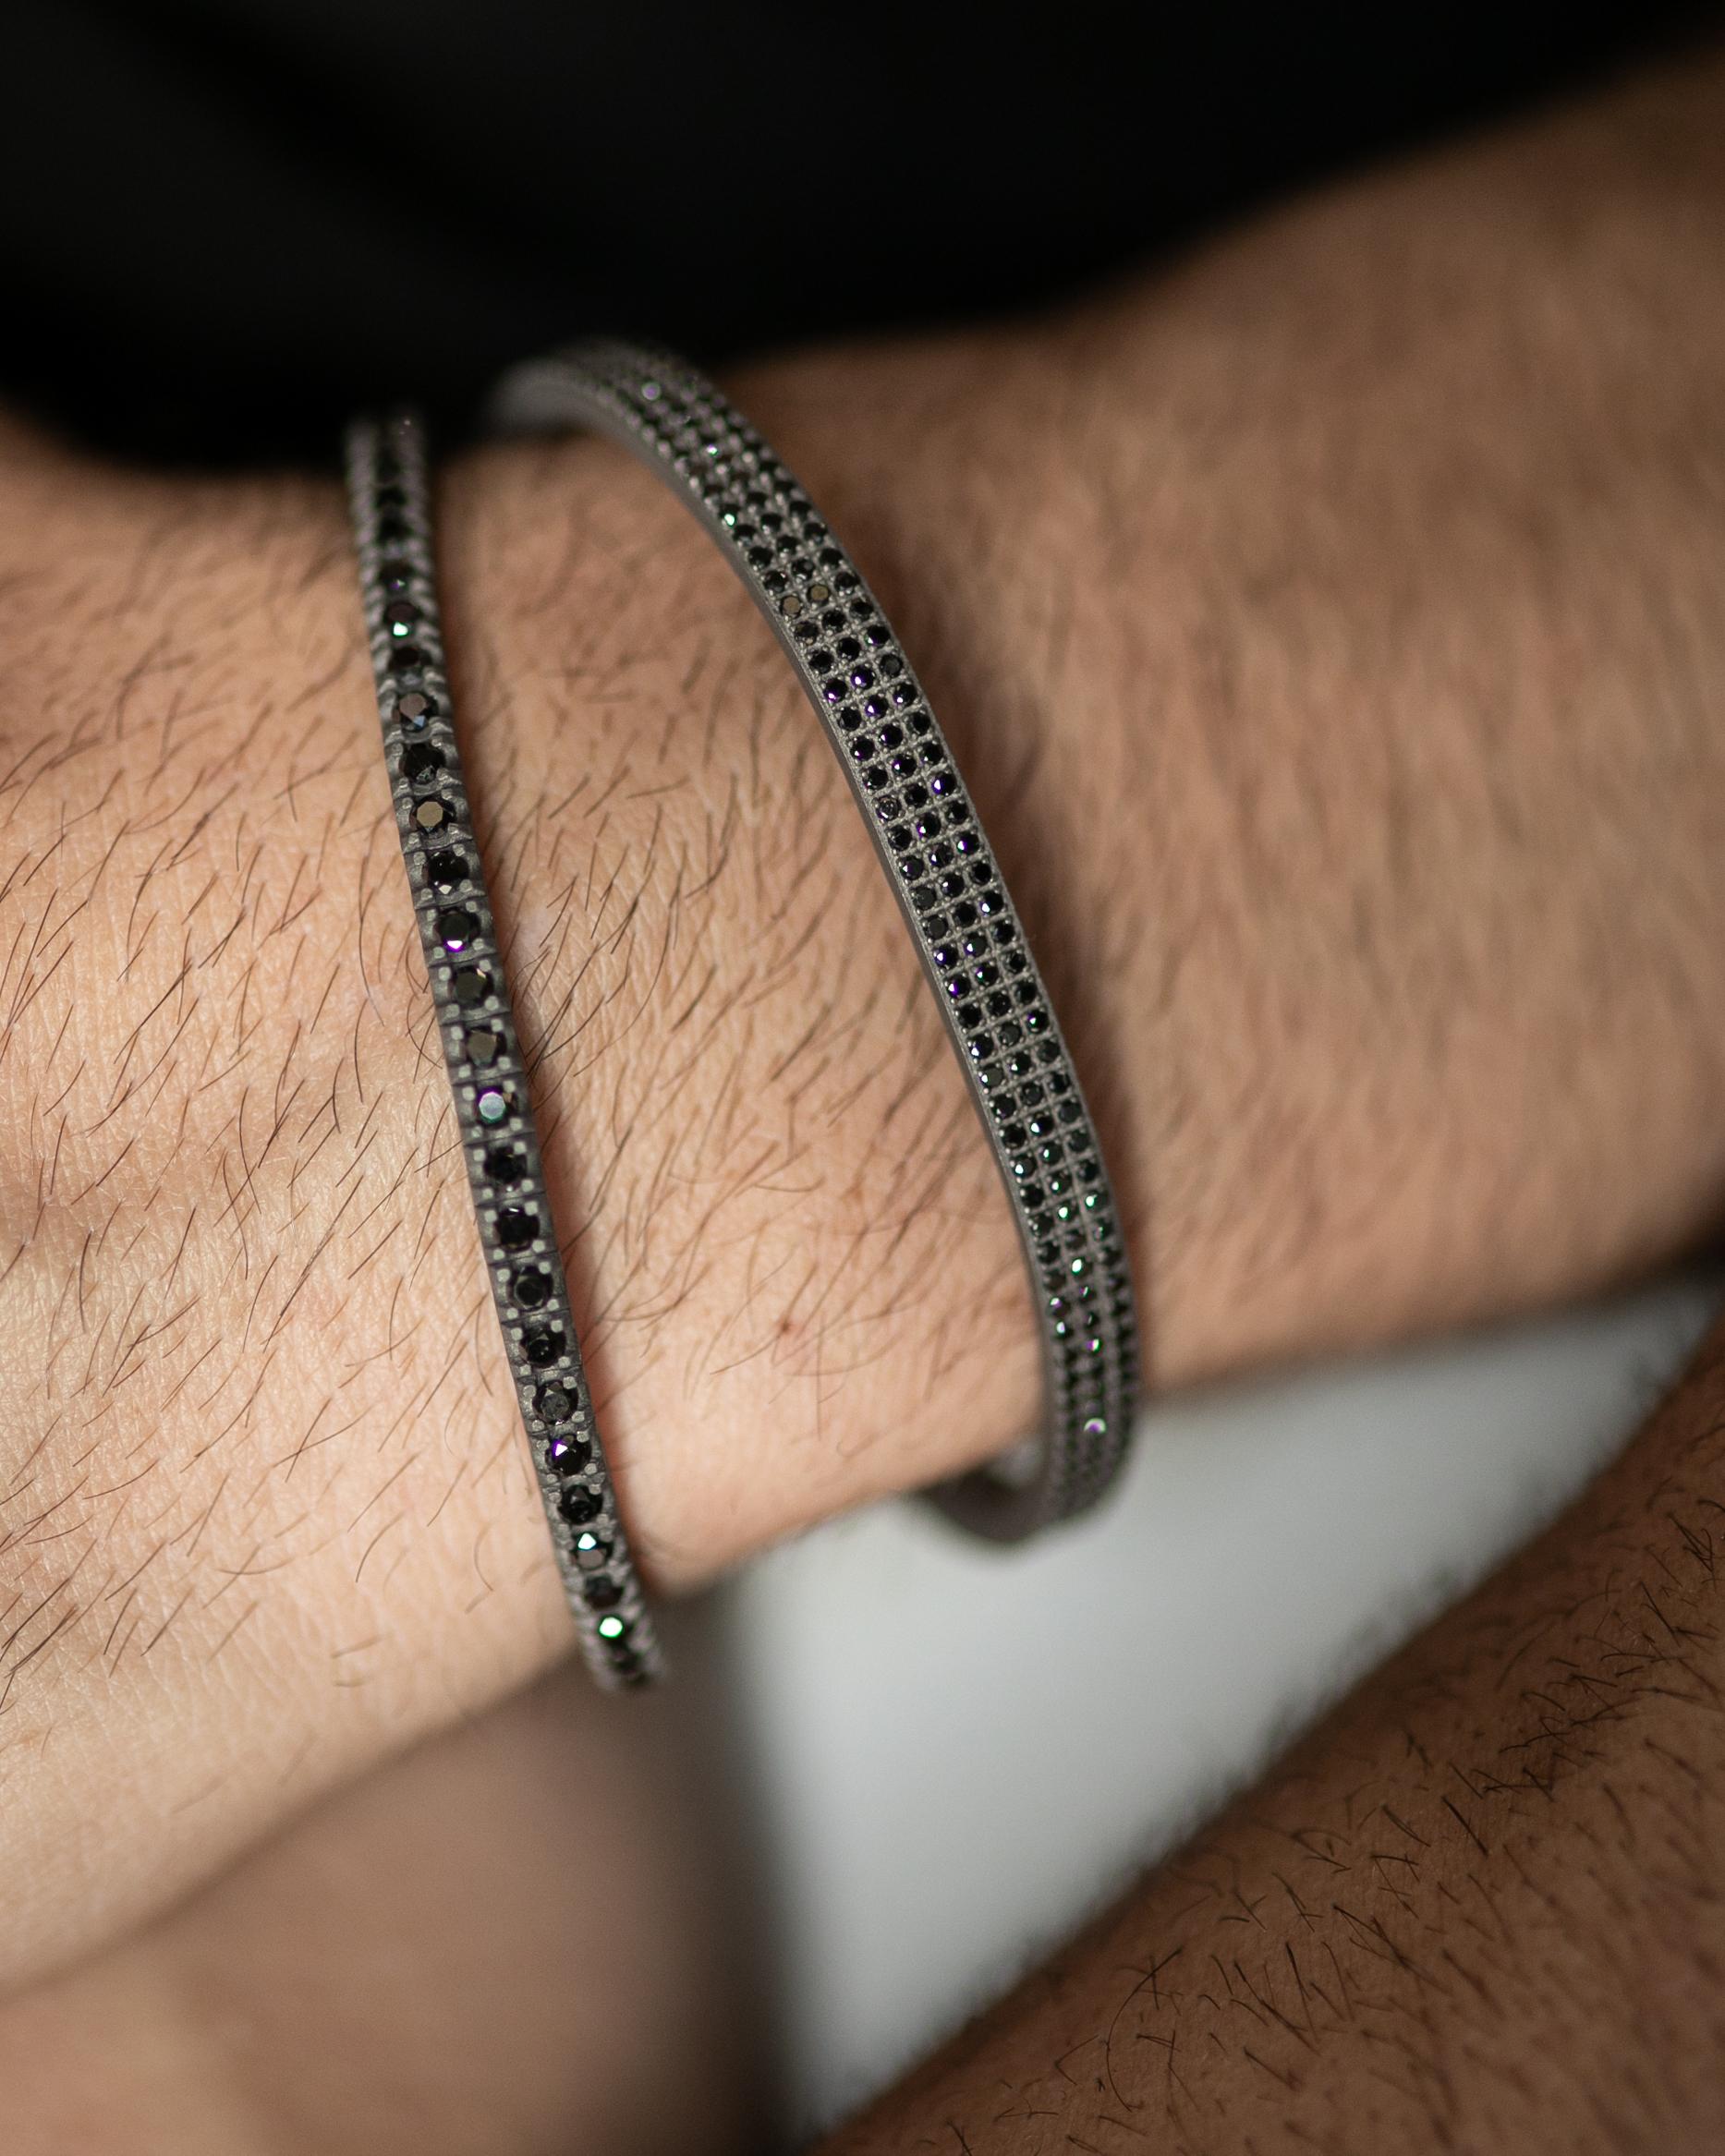 Le bracelet souple en titane est issu de notre collection Hommes. Le bracelet est orné de 58 magnifiques diamants noirs naturels d'un total de 3,36 carats et de détails en or rose 18 carats. Le diamètre du bracelet est de 6,5 cm. Parfait pour tous